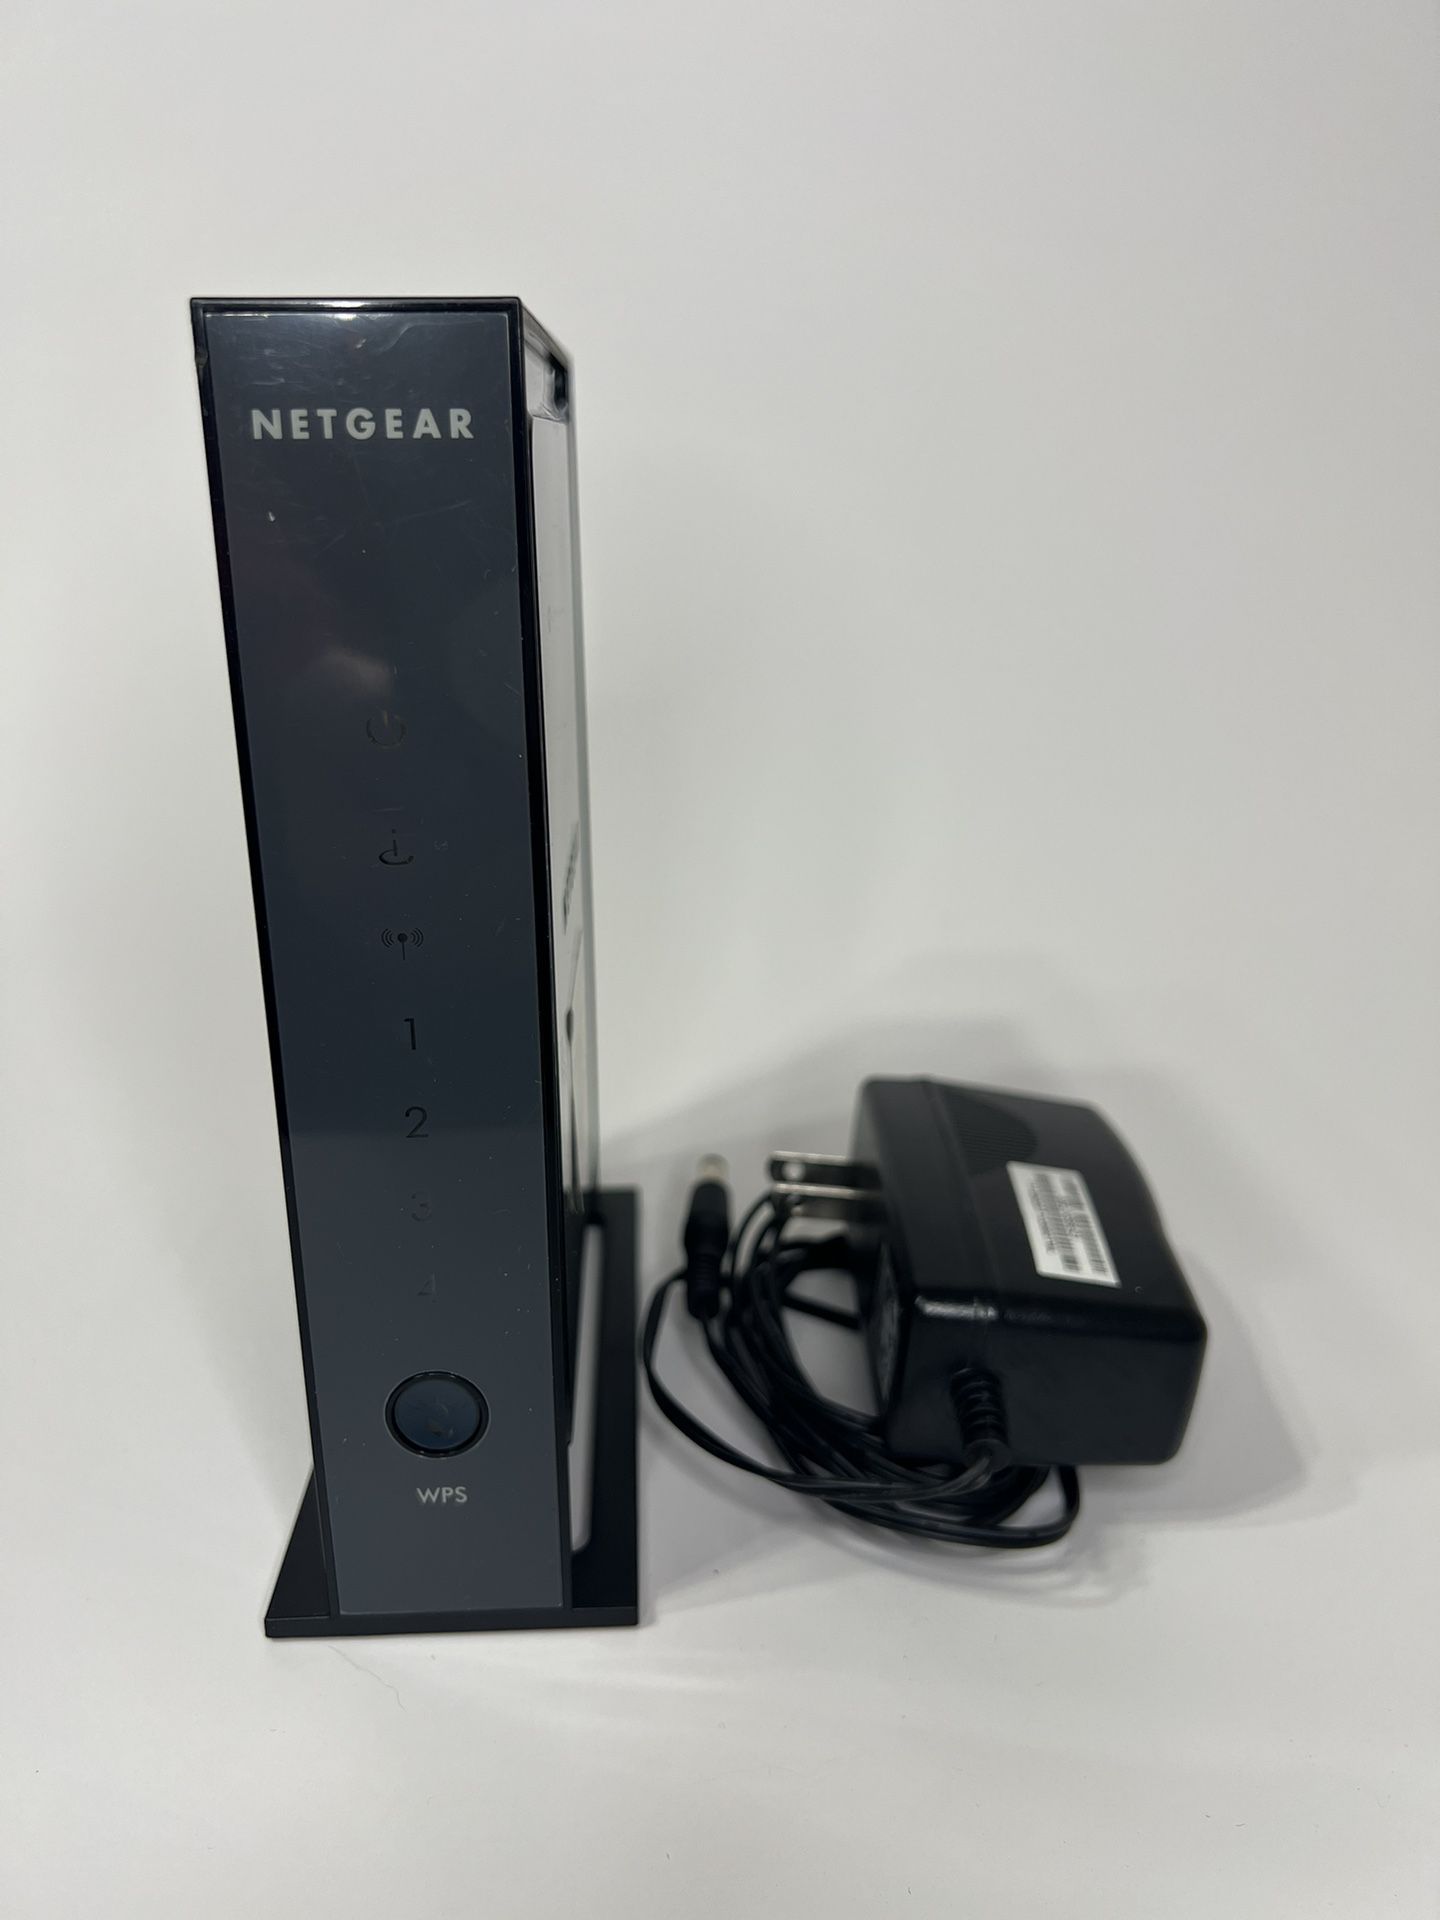 Netgear N 300 Wireless Router WNR2000